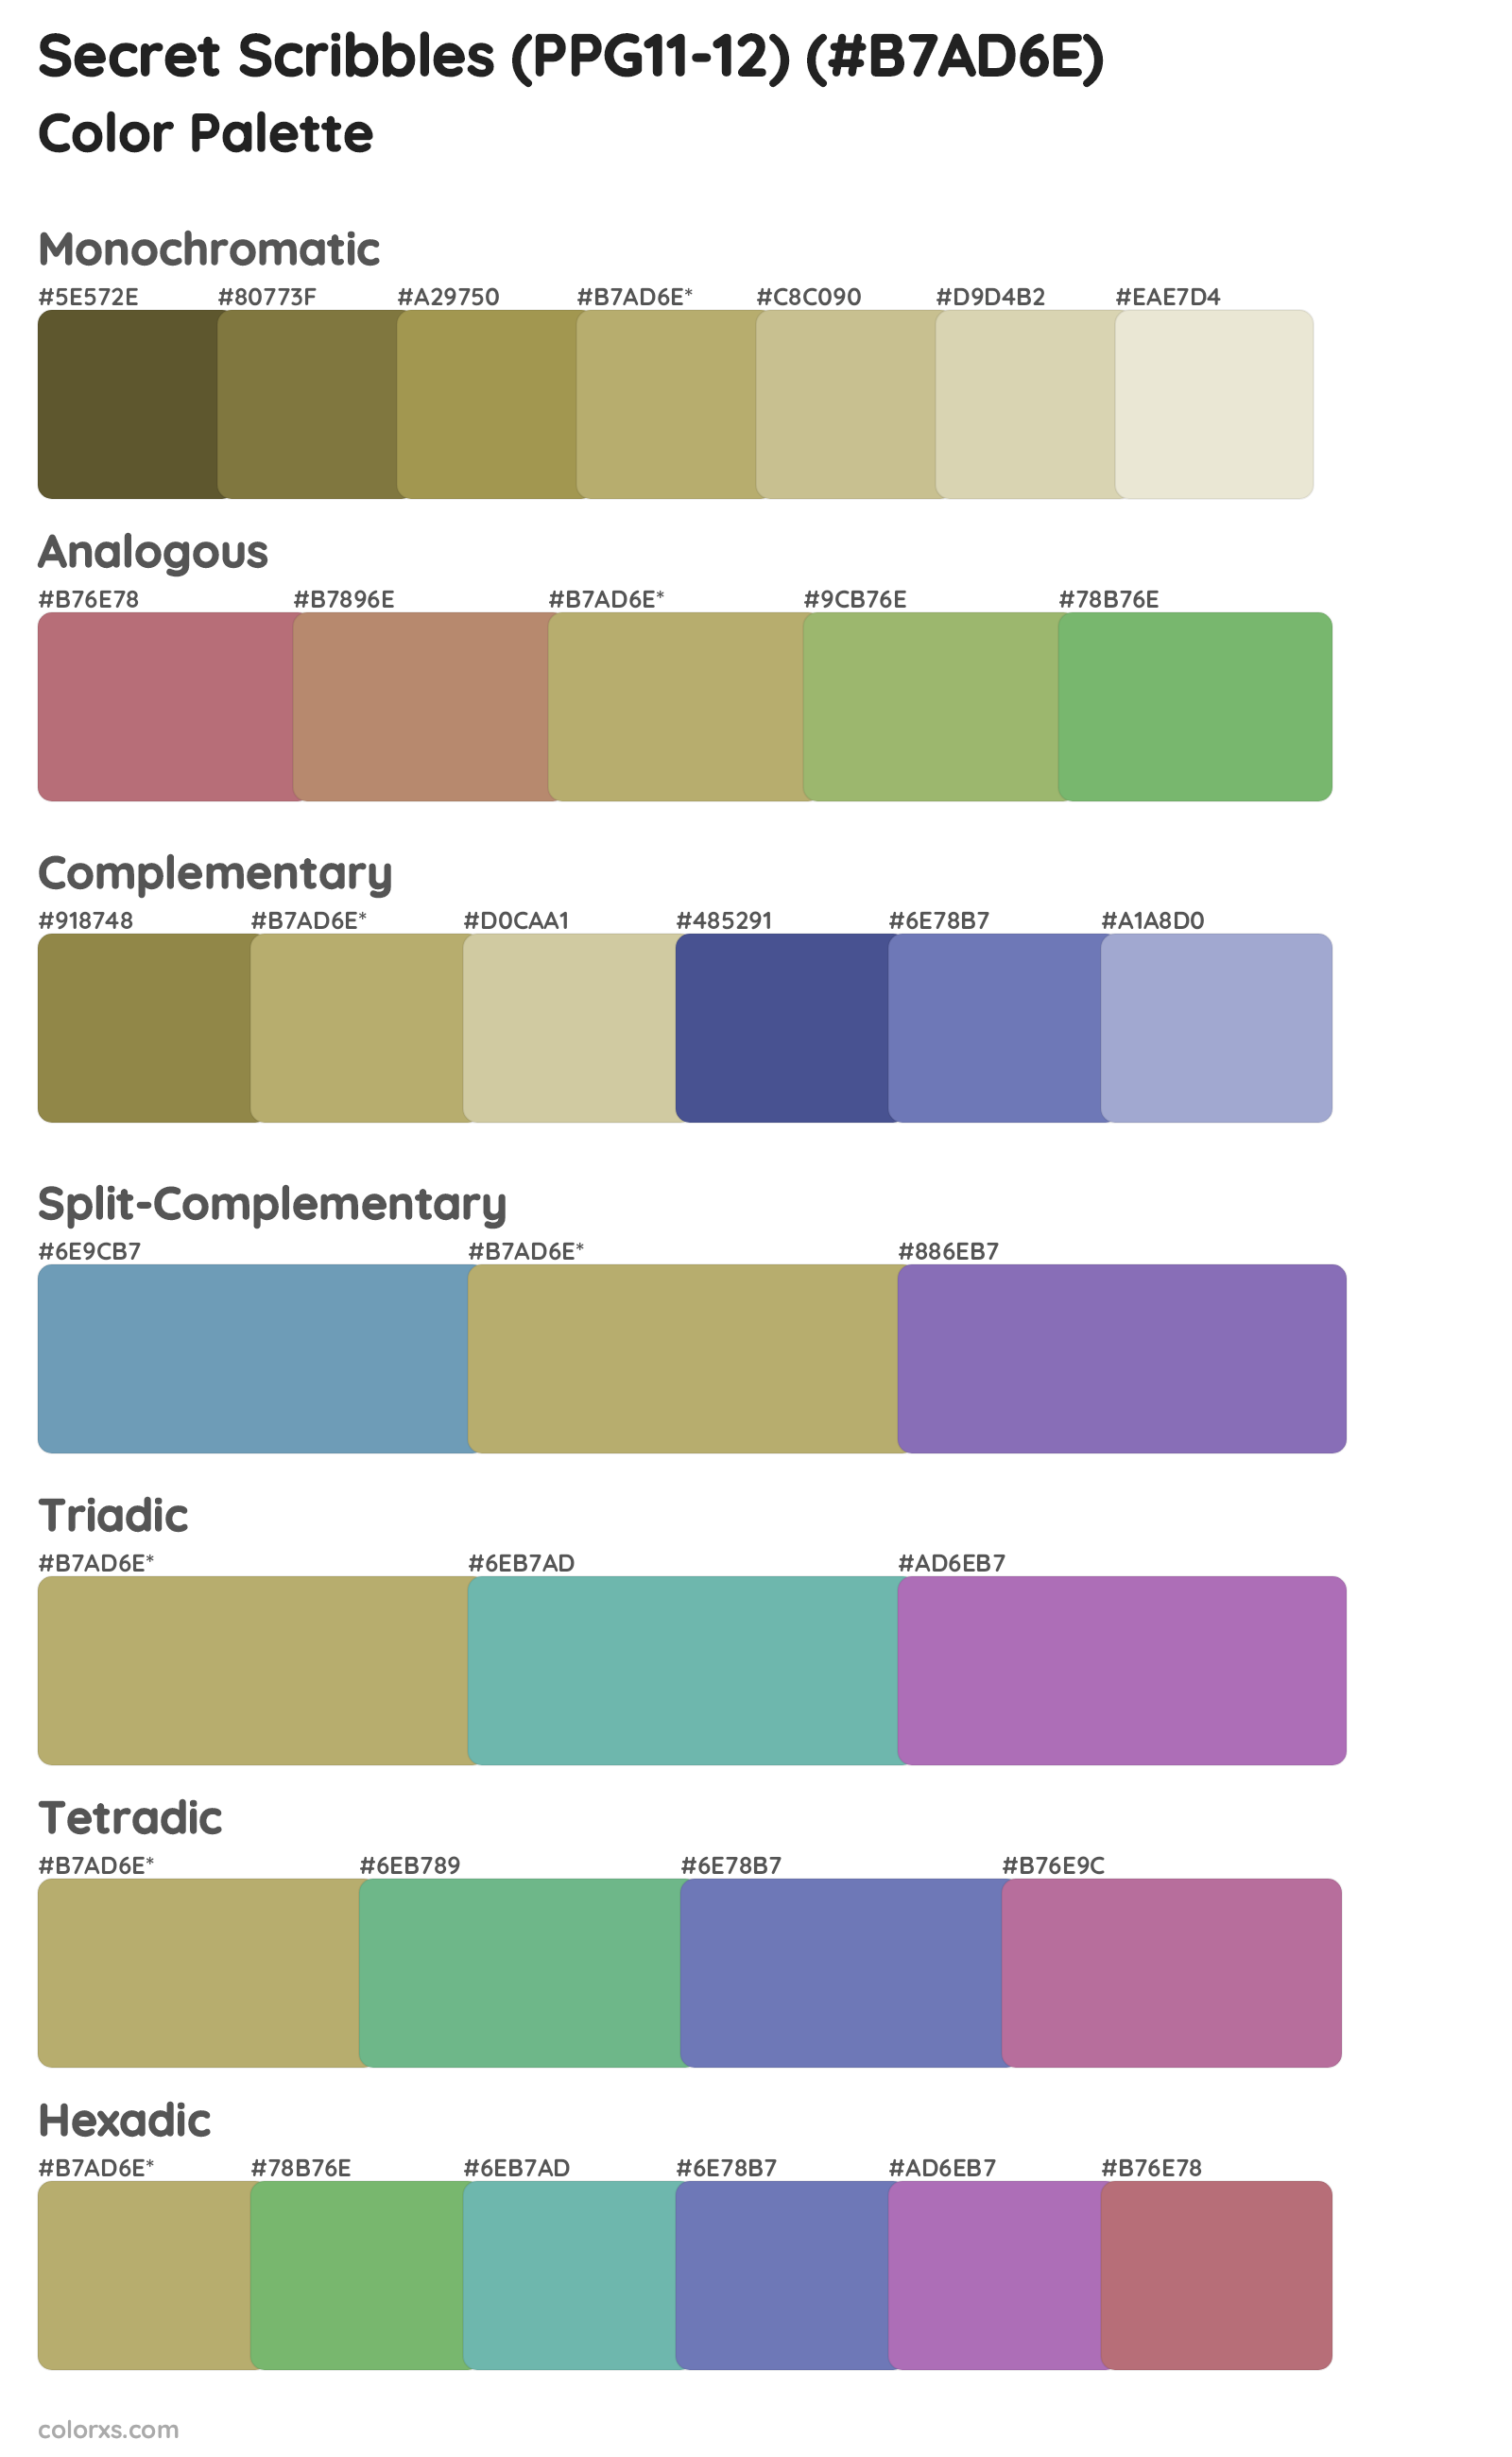 Secret Scribbles (PPG11-12) Color Scheme Palettes